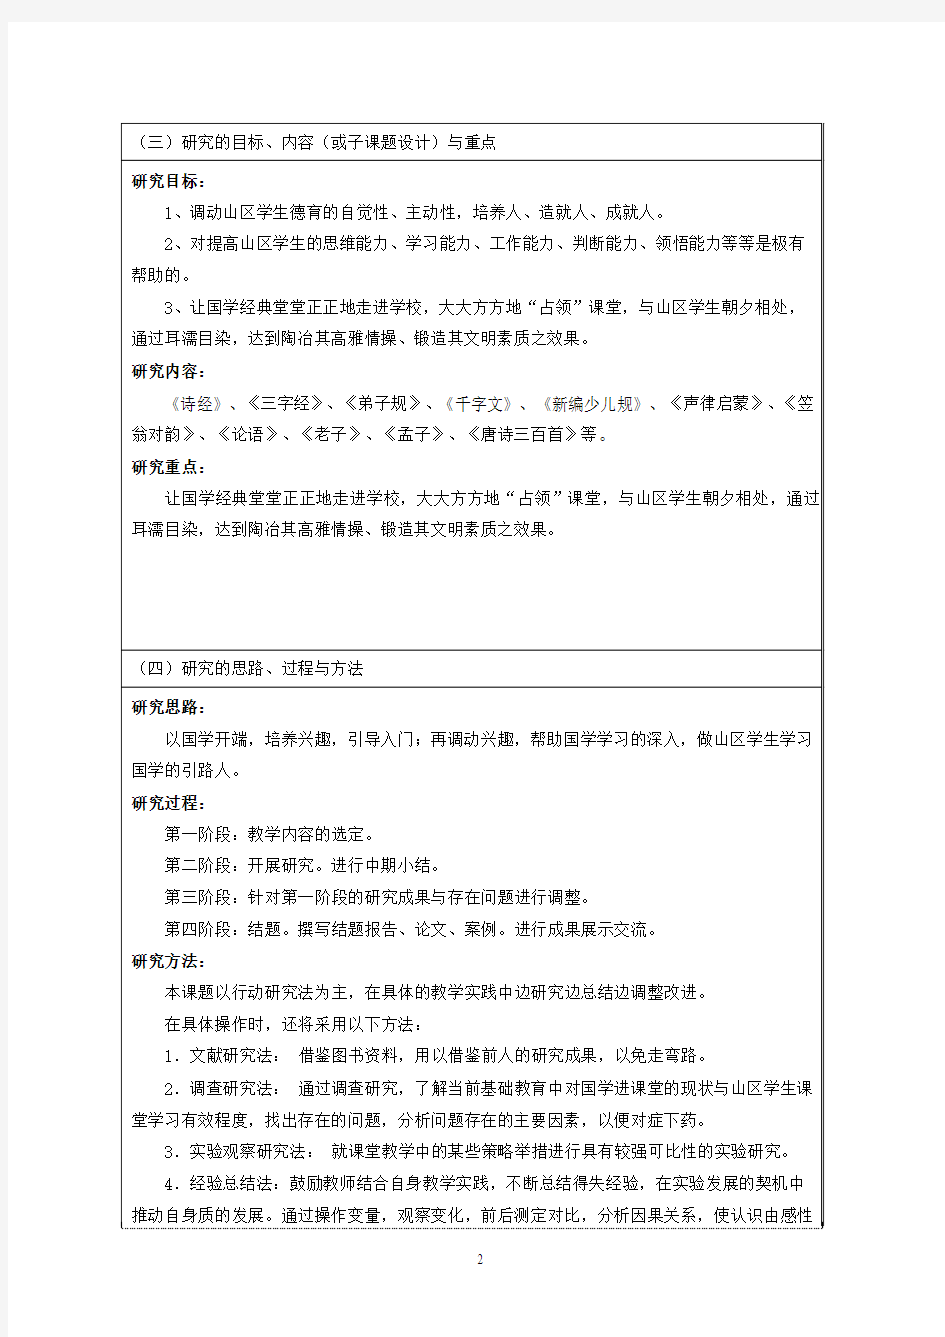 赣榆县小学国学经典教育专项课题申报评审书活页